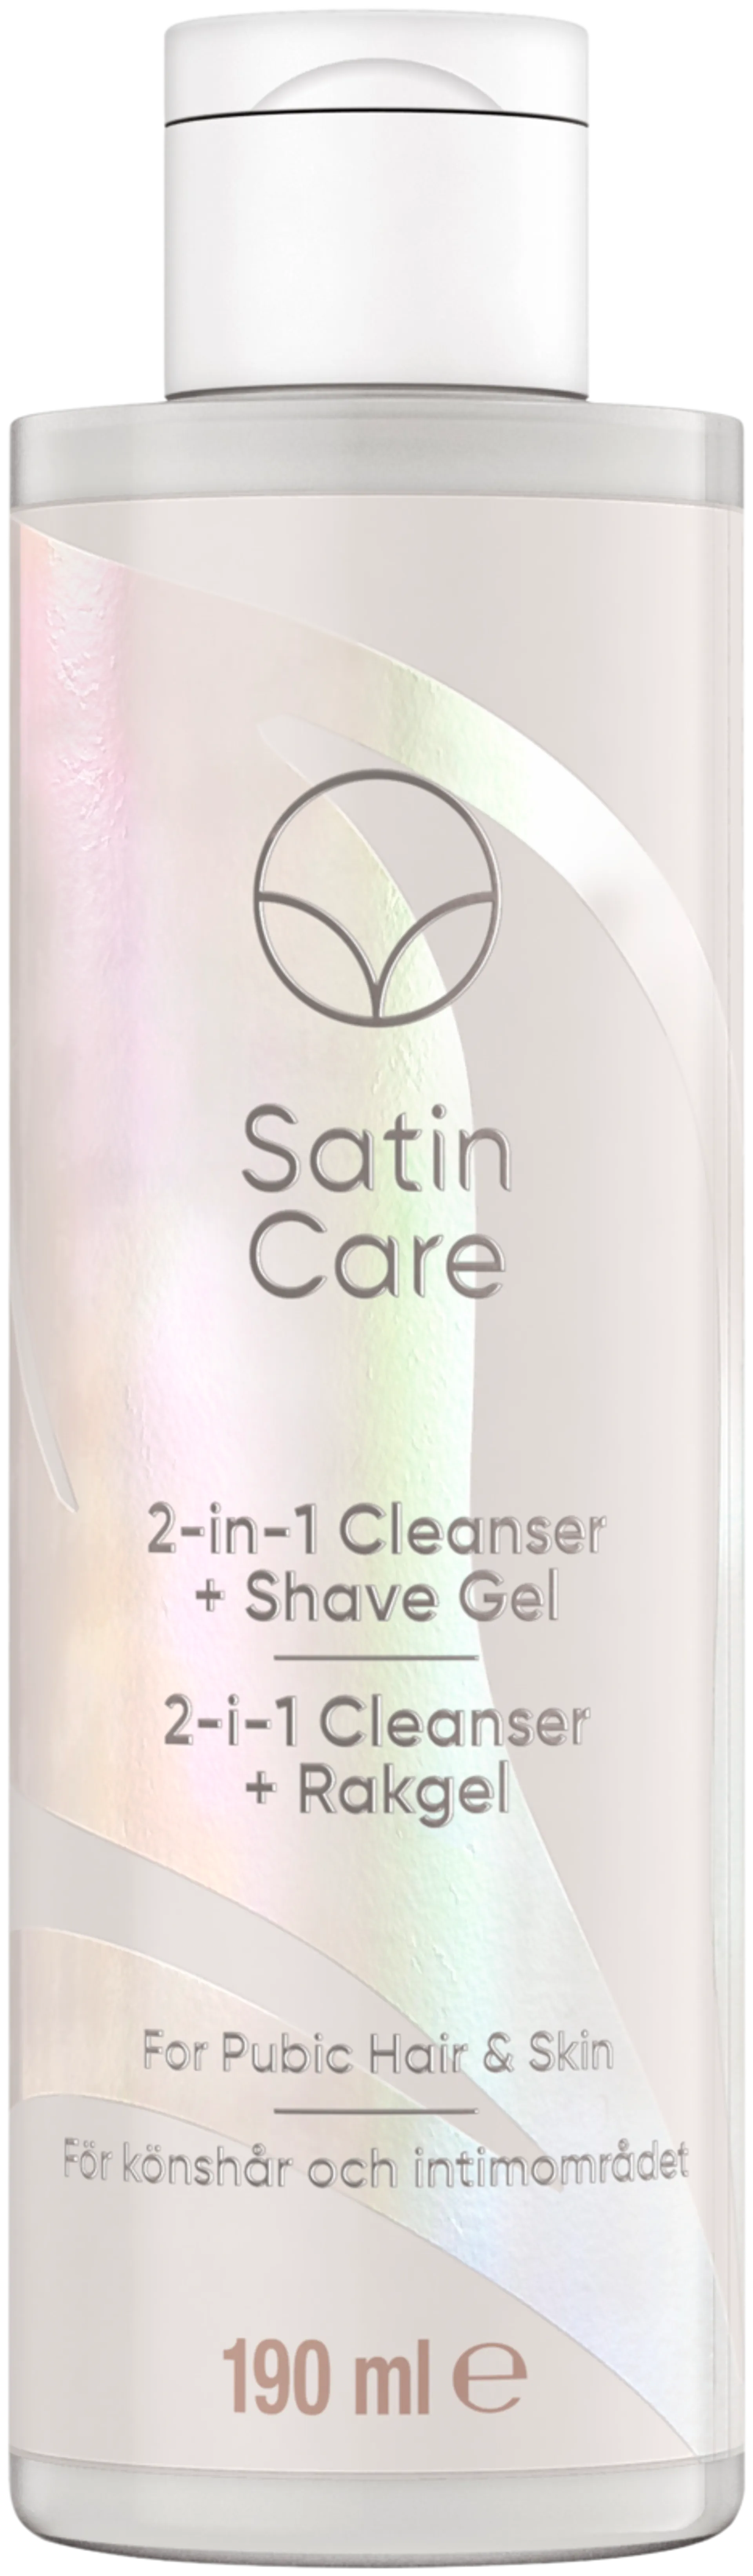 Gillette Satin Care 2in1 Cleanser + Shave Gel 190ml